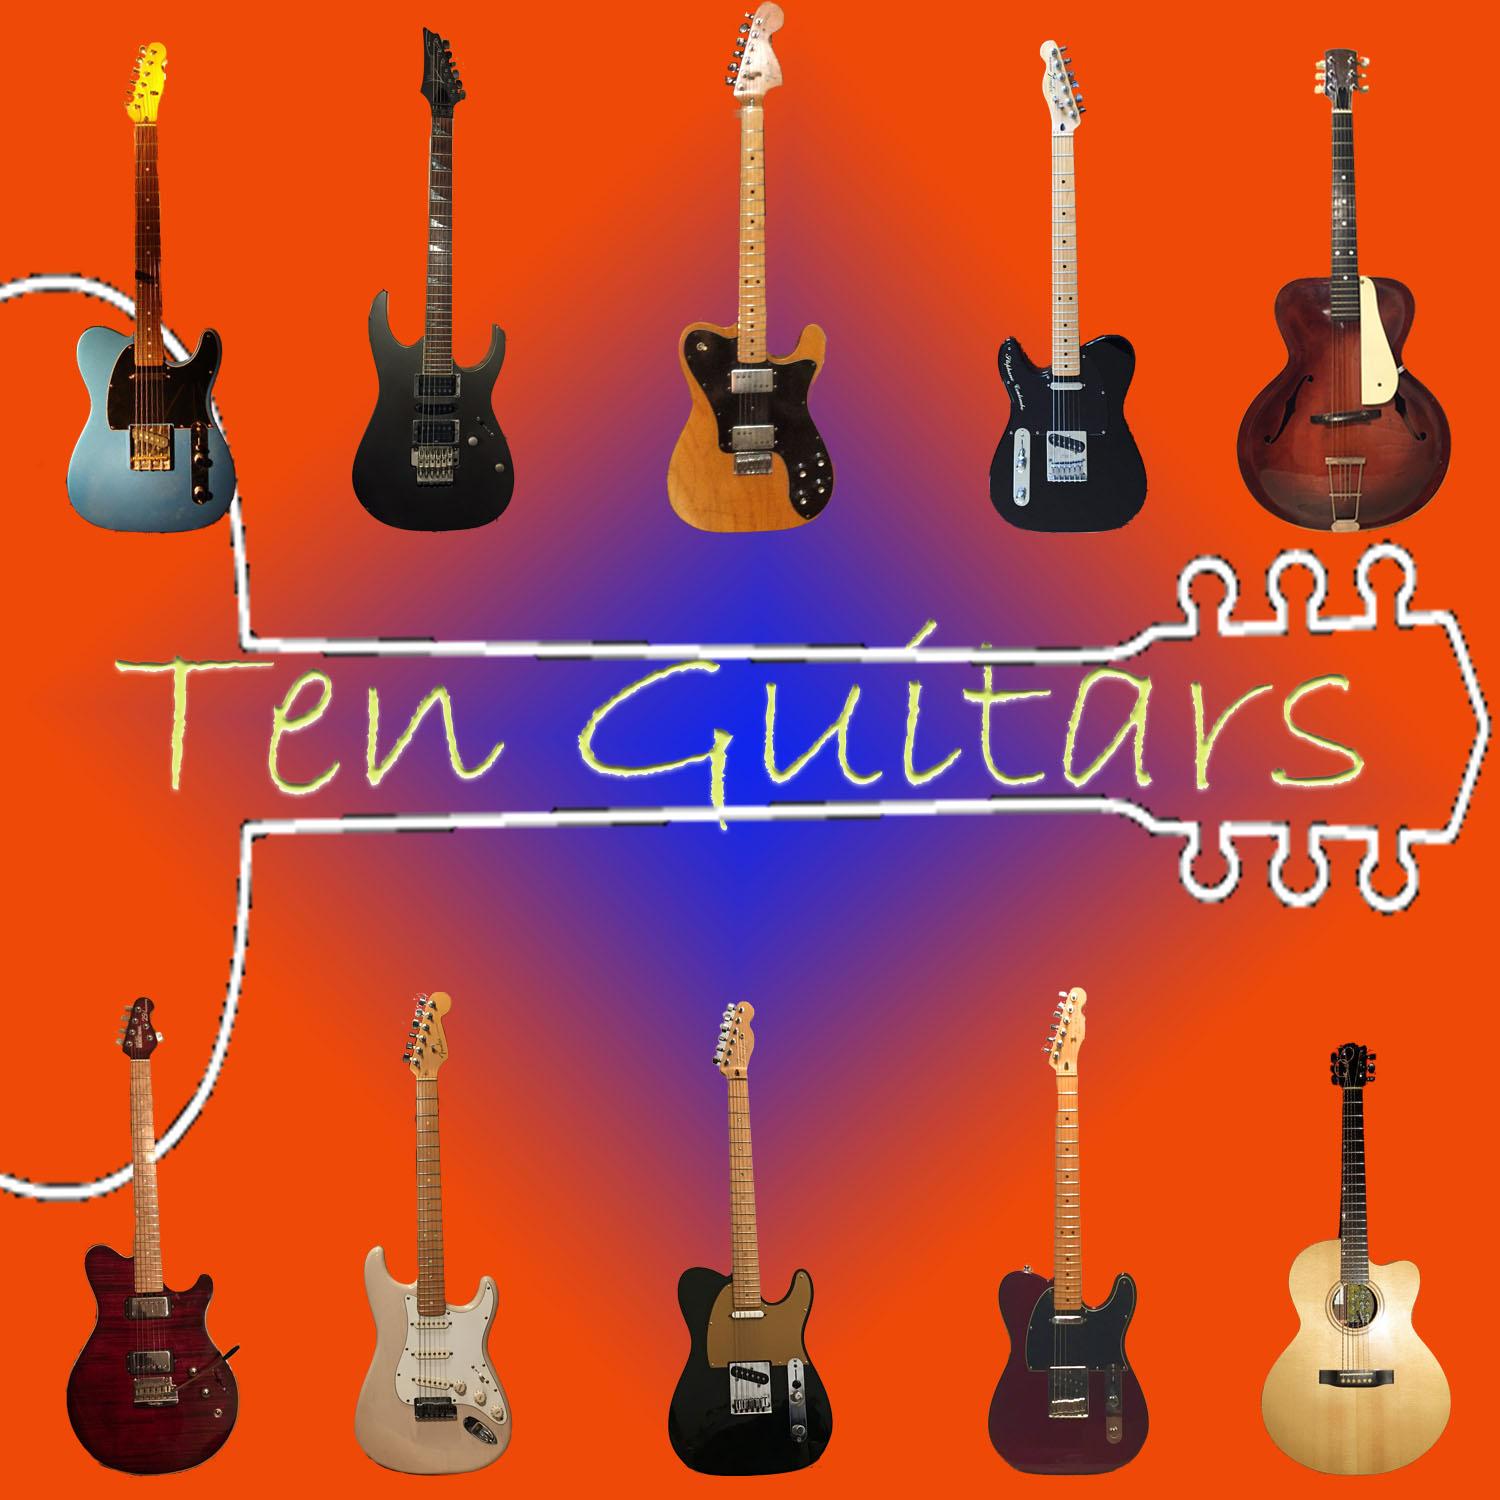 Ten Guitars for Alzheimer Society